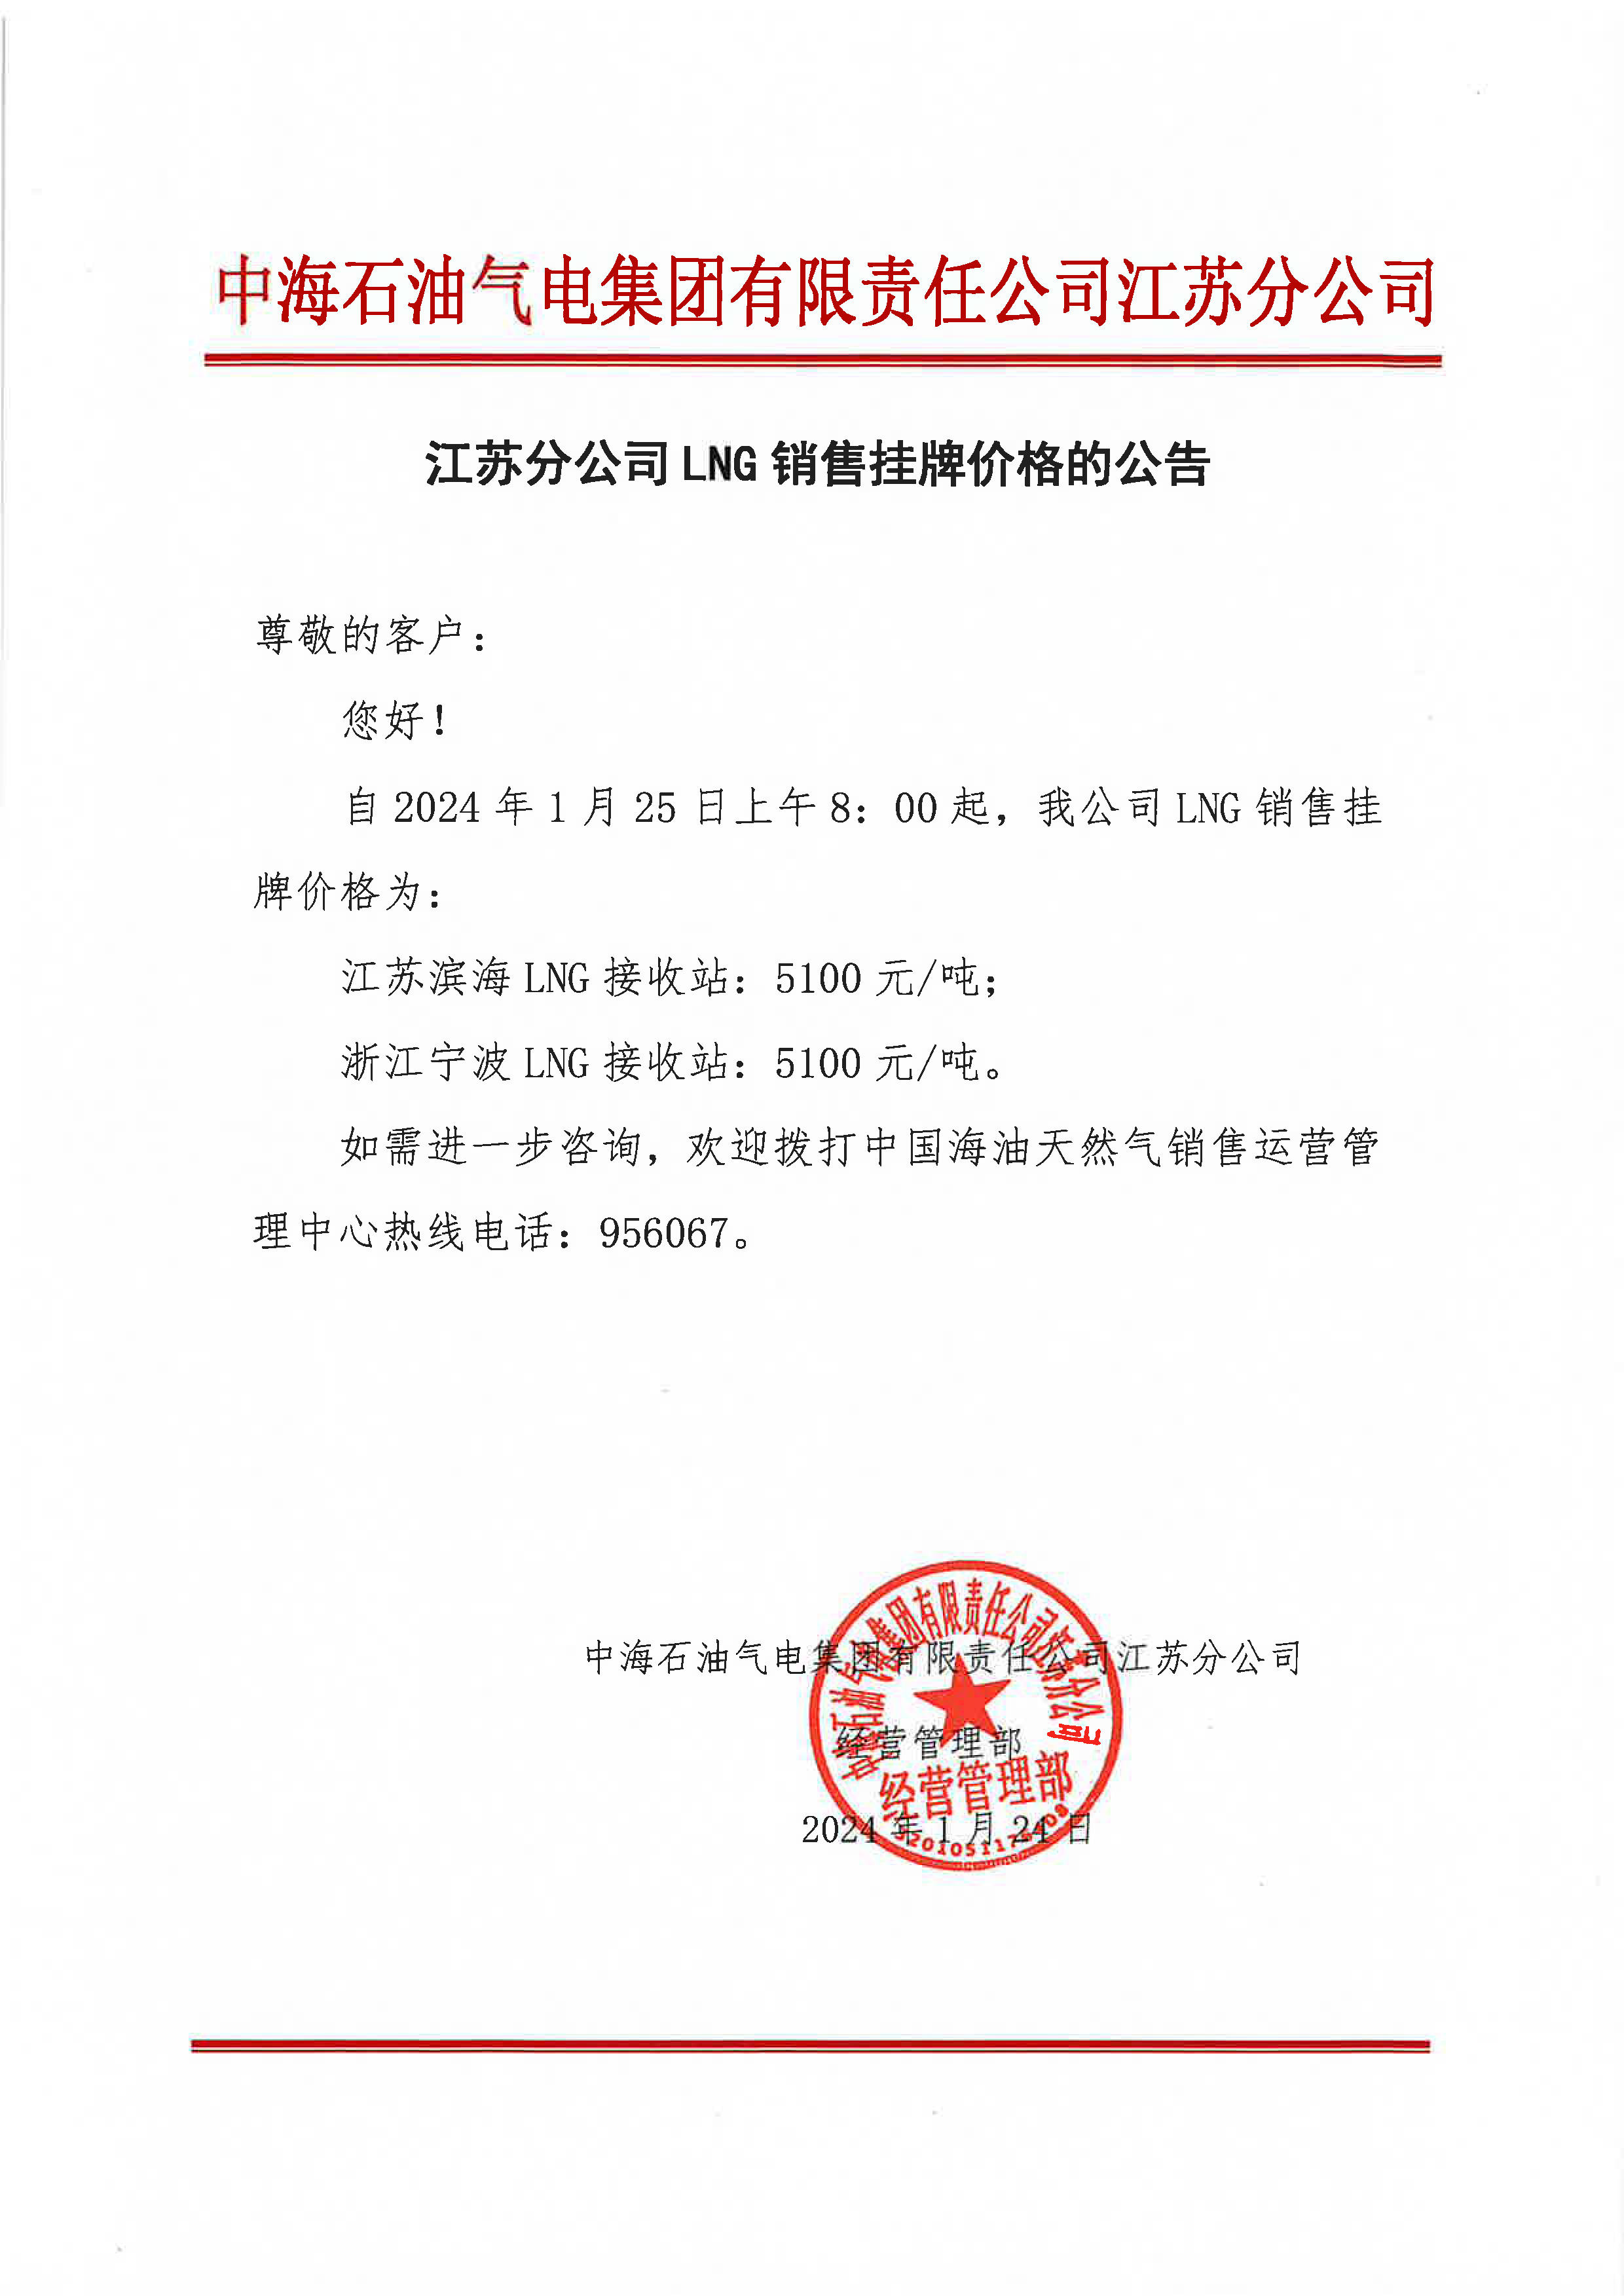 中海油江苏分公司关于1月25日华东苏皖市场价格调整公告.png